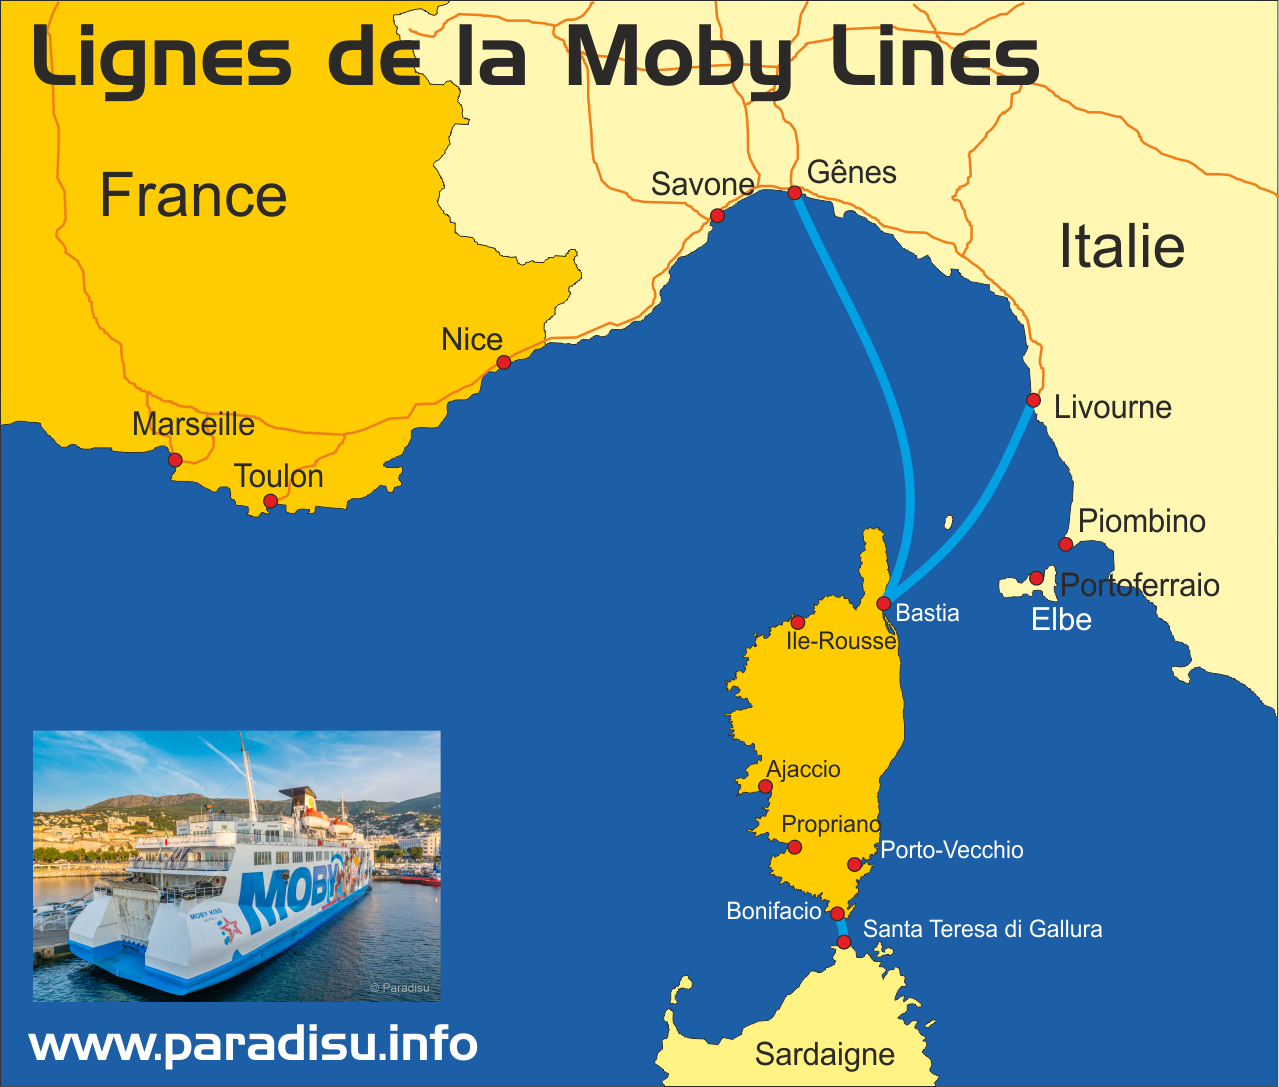 Lignes de la Moby Lines vers la Corse